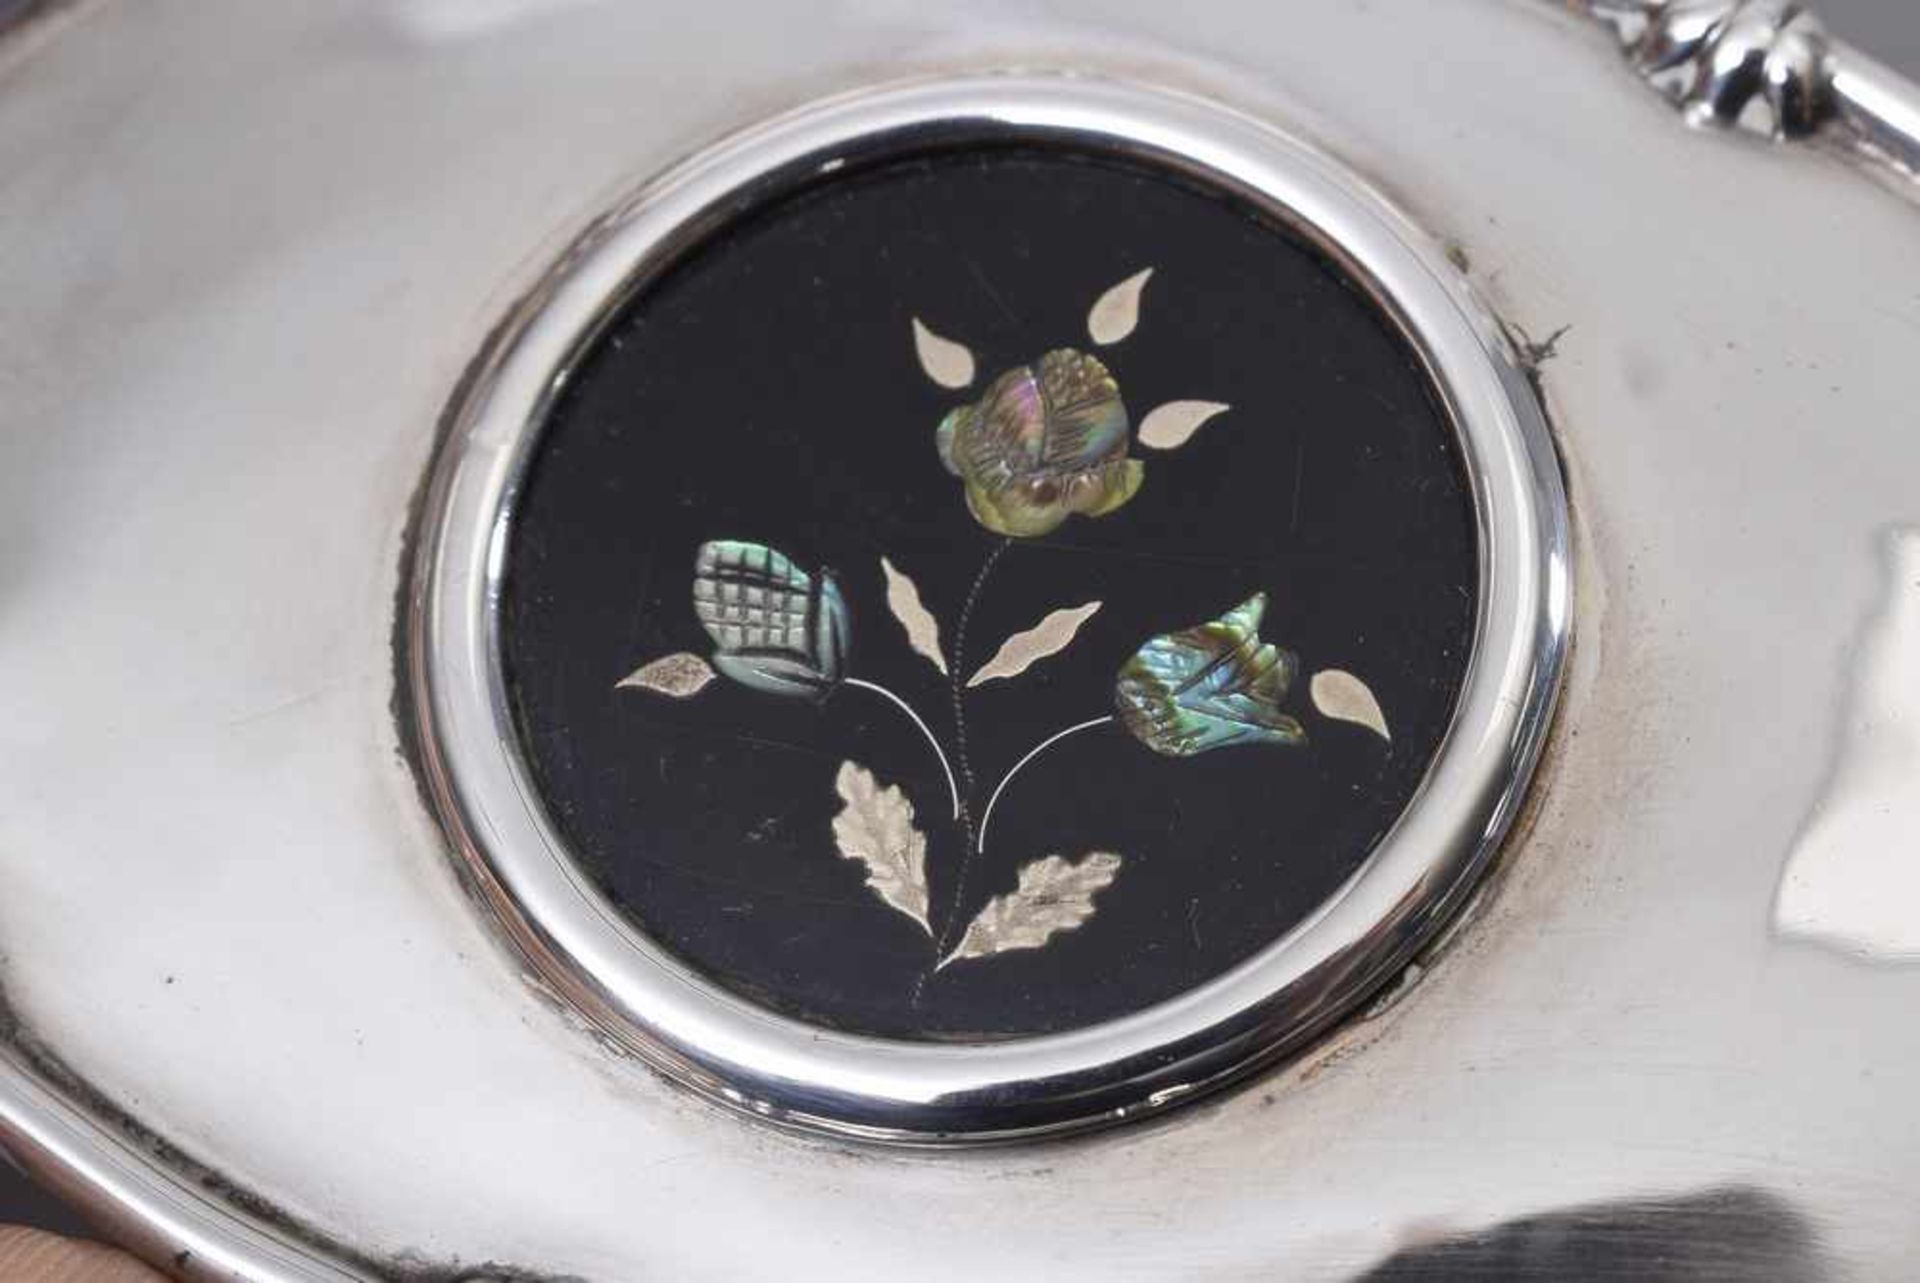 Ovale Dose mit Lack-Tondo im Deckel und Silber sowie Perlmutt Einlagen "Blumen", innen vergoldet, - Bild 2 aus 5